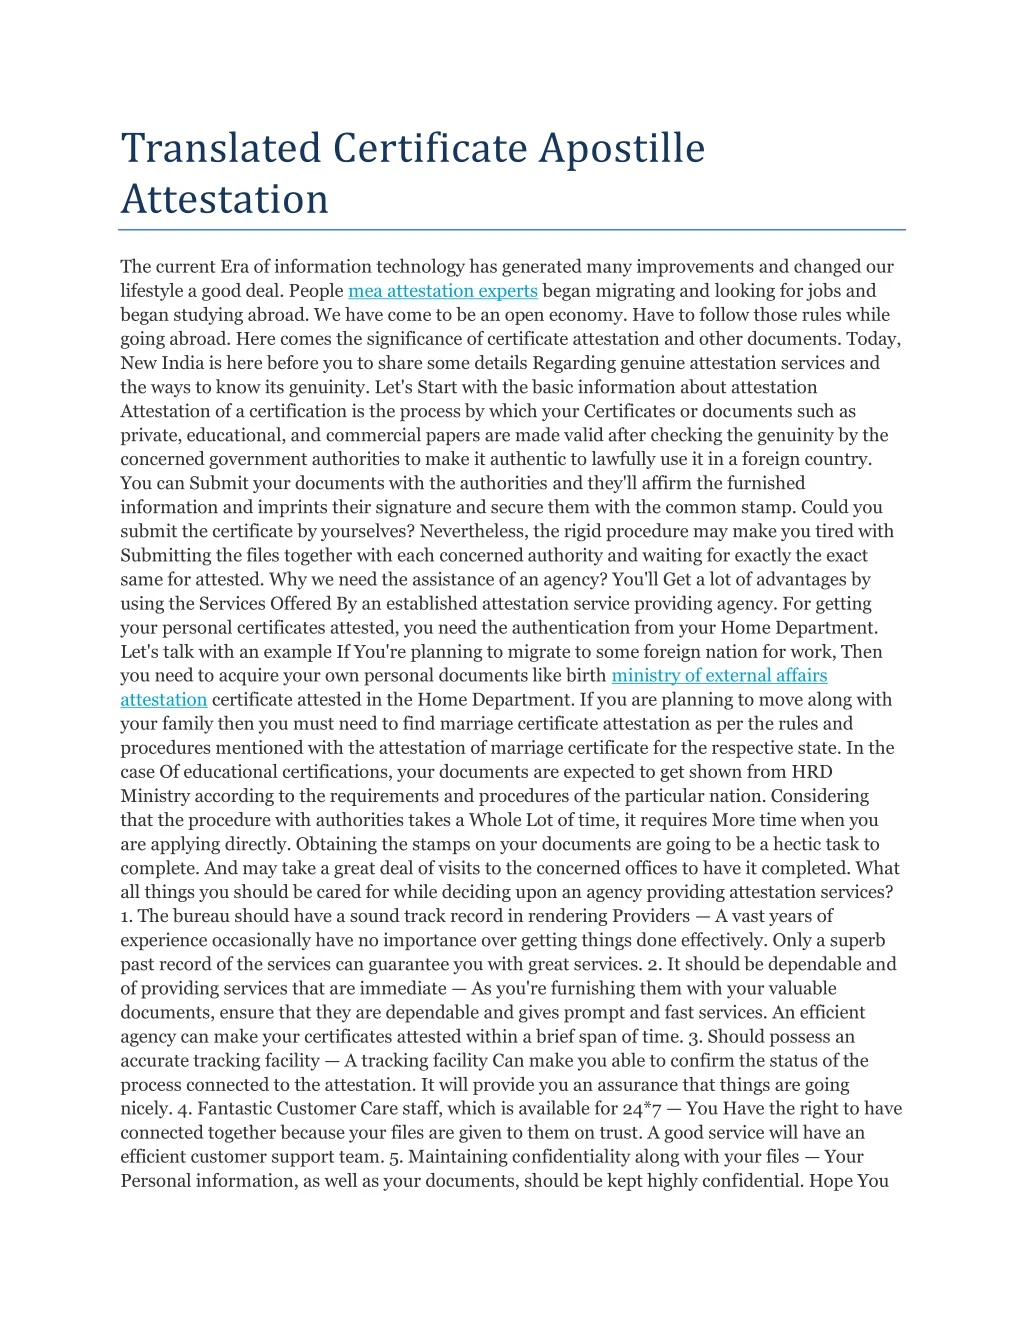 translated certificate apostille attestation